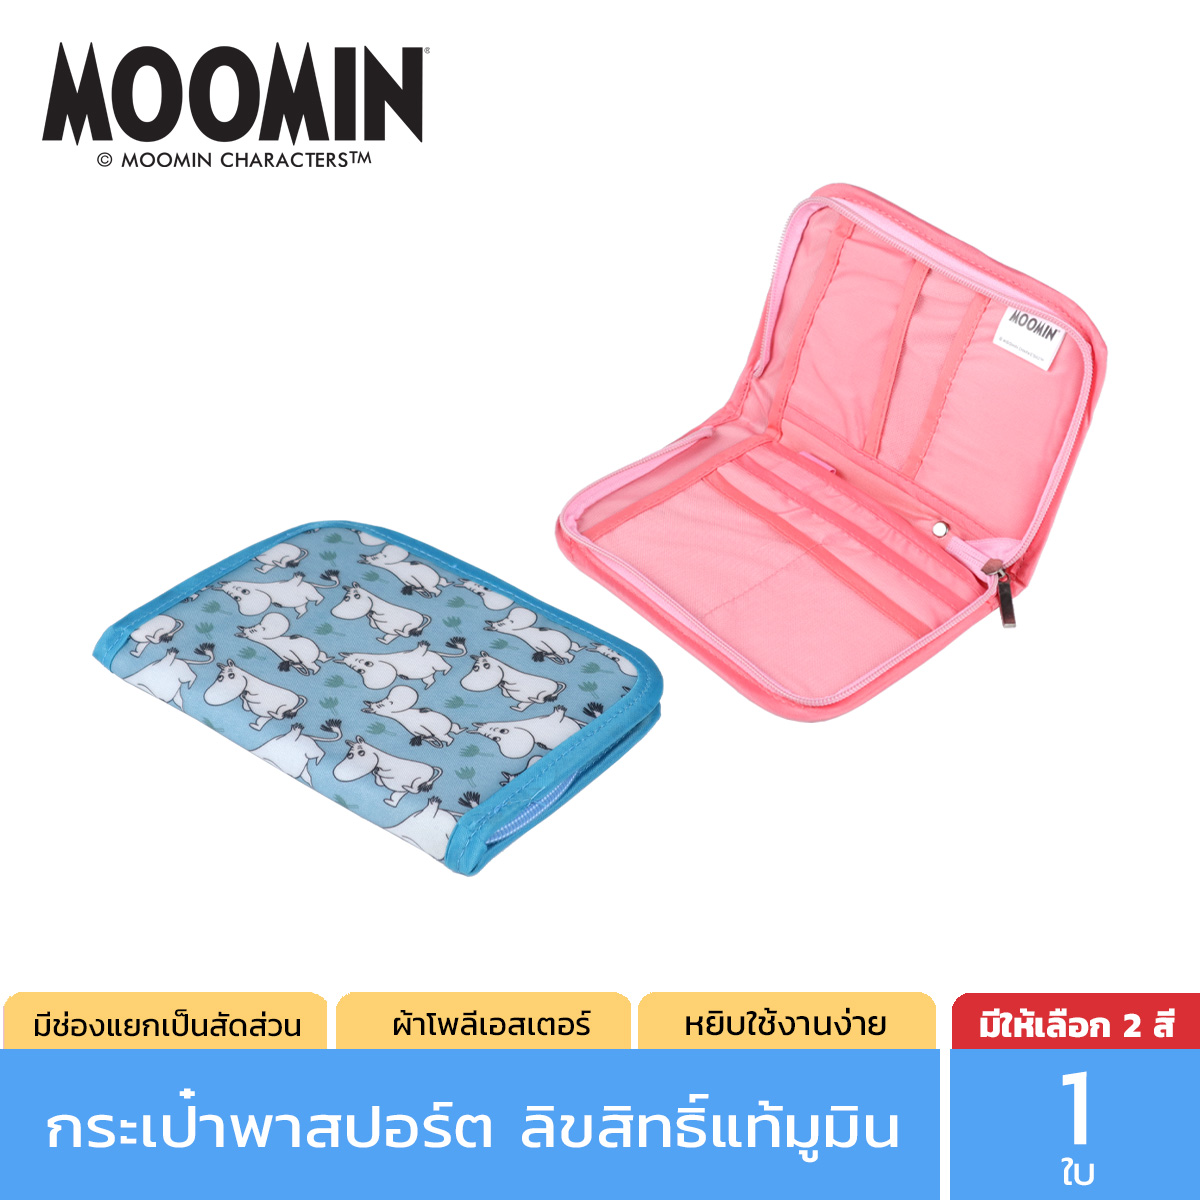 Moomin กระเป๋าใส่หนังสือเดินทาง ลิขสิทธิ์แท้ลายมูมิน สีฟ้า รุ่น 0034 และ สีชมพู รุ่น 0035